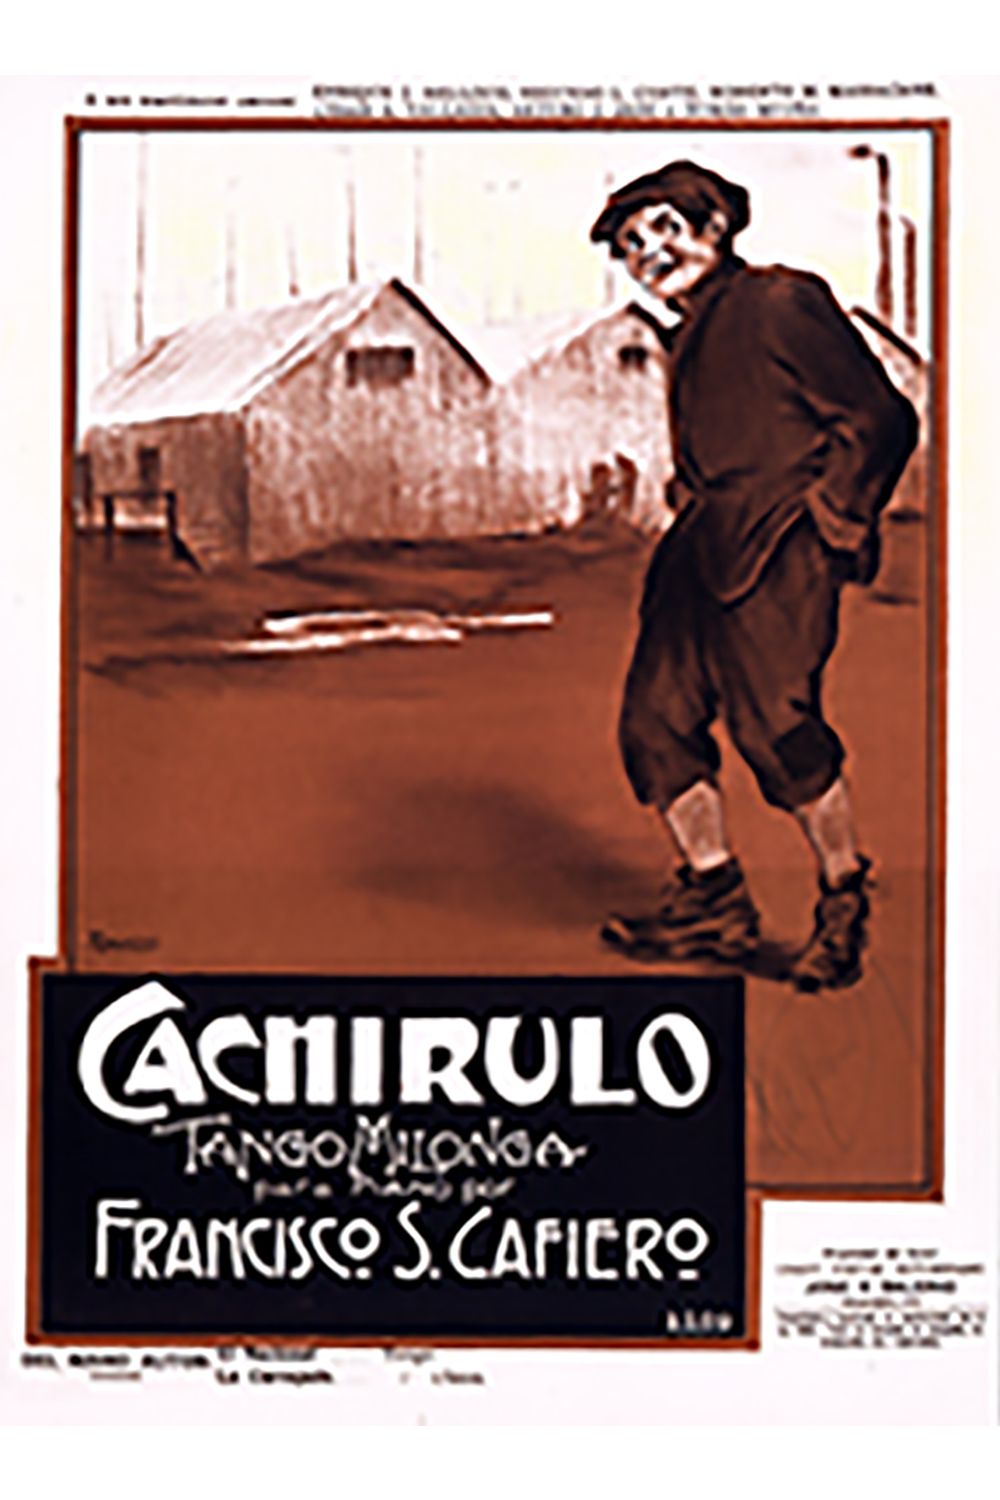 "Cachirulo", partitura musical del Tango.